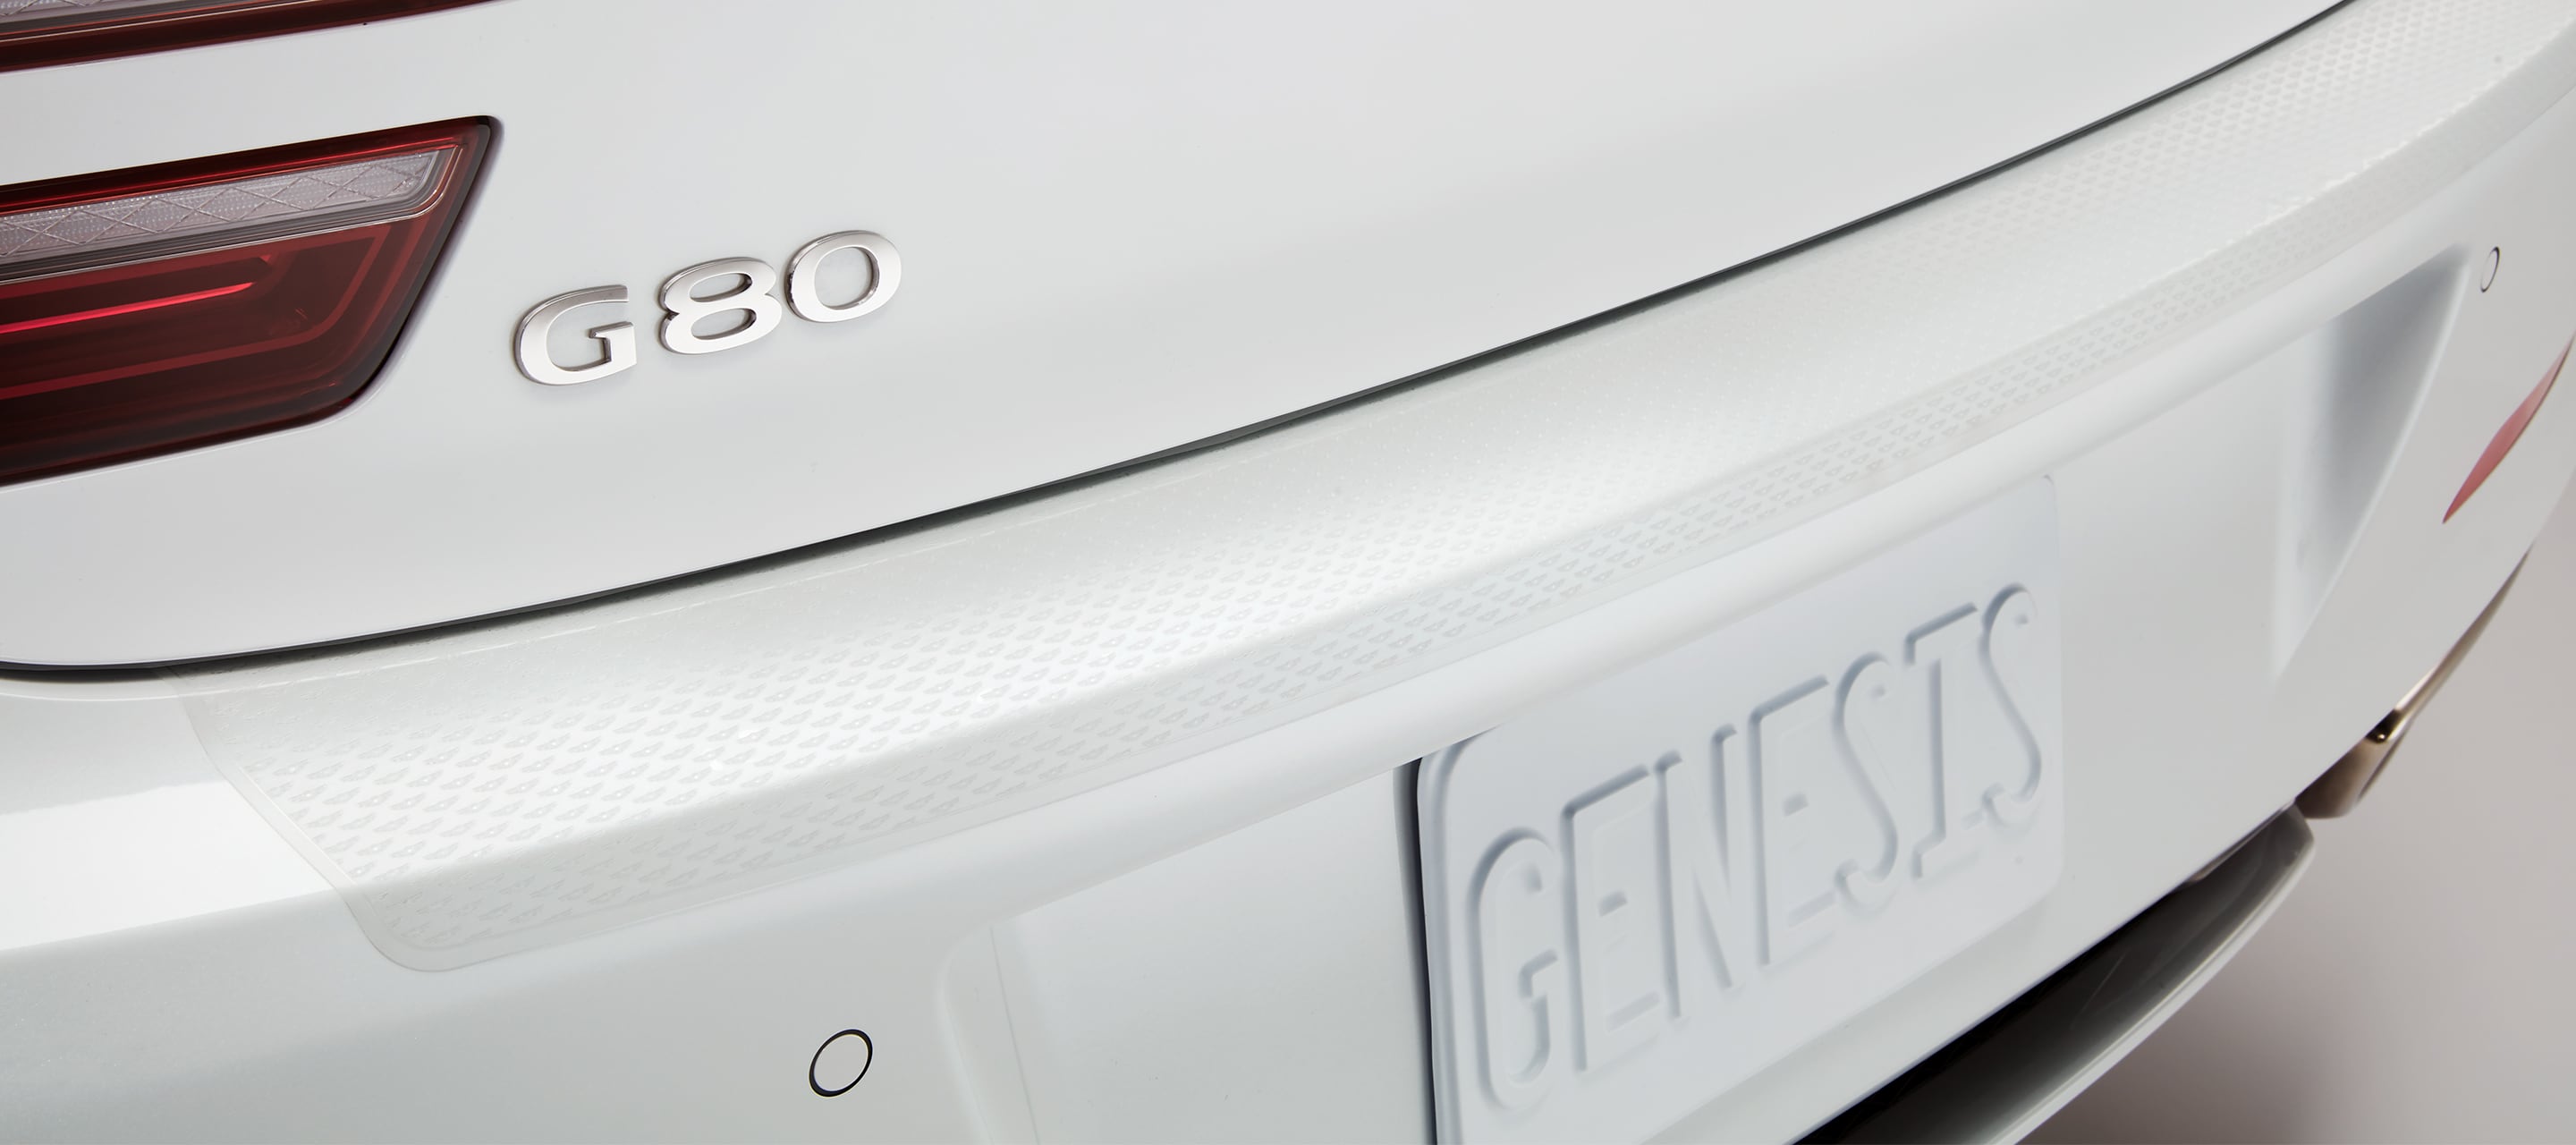 2022 Genesis G80 bumper appliqué.